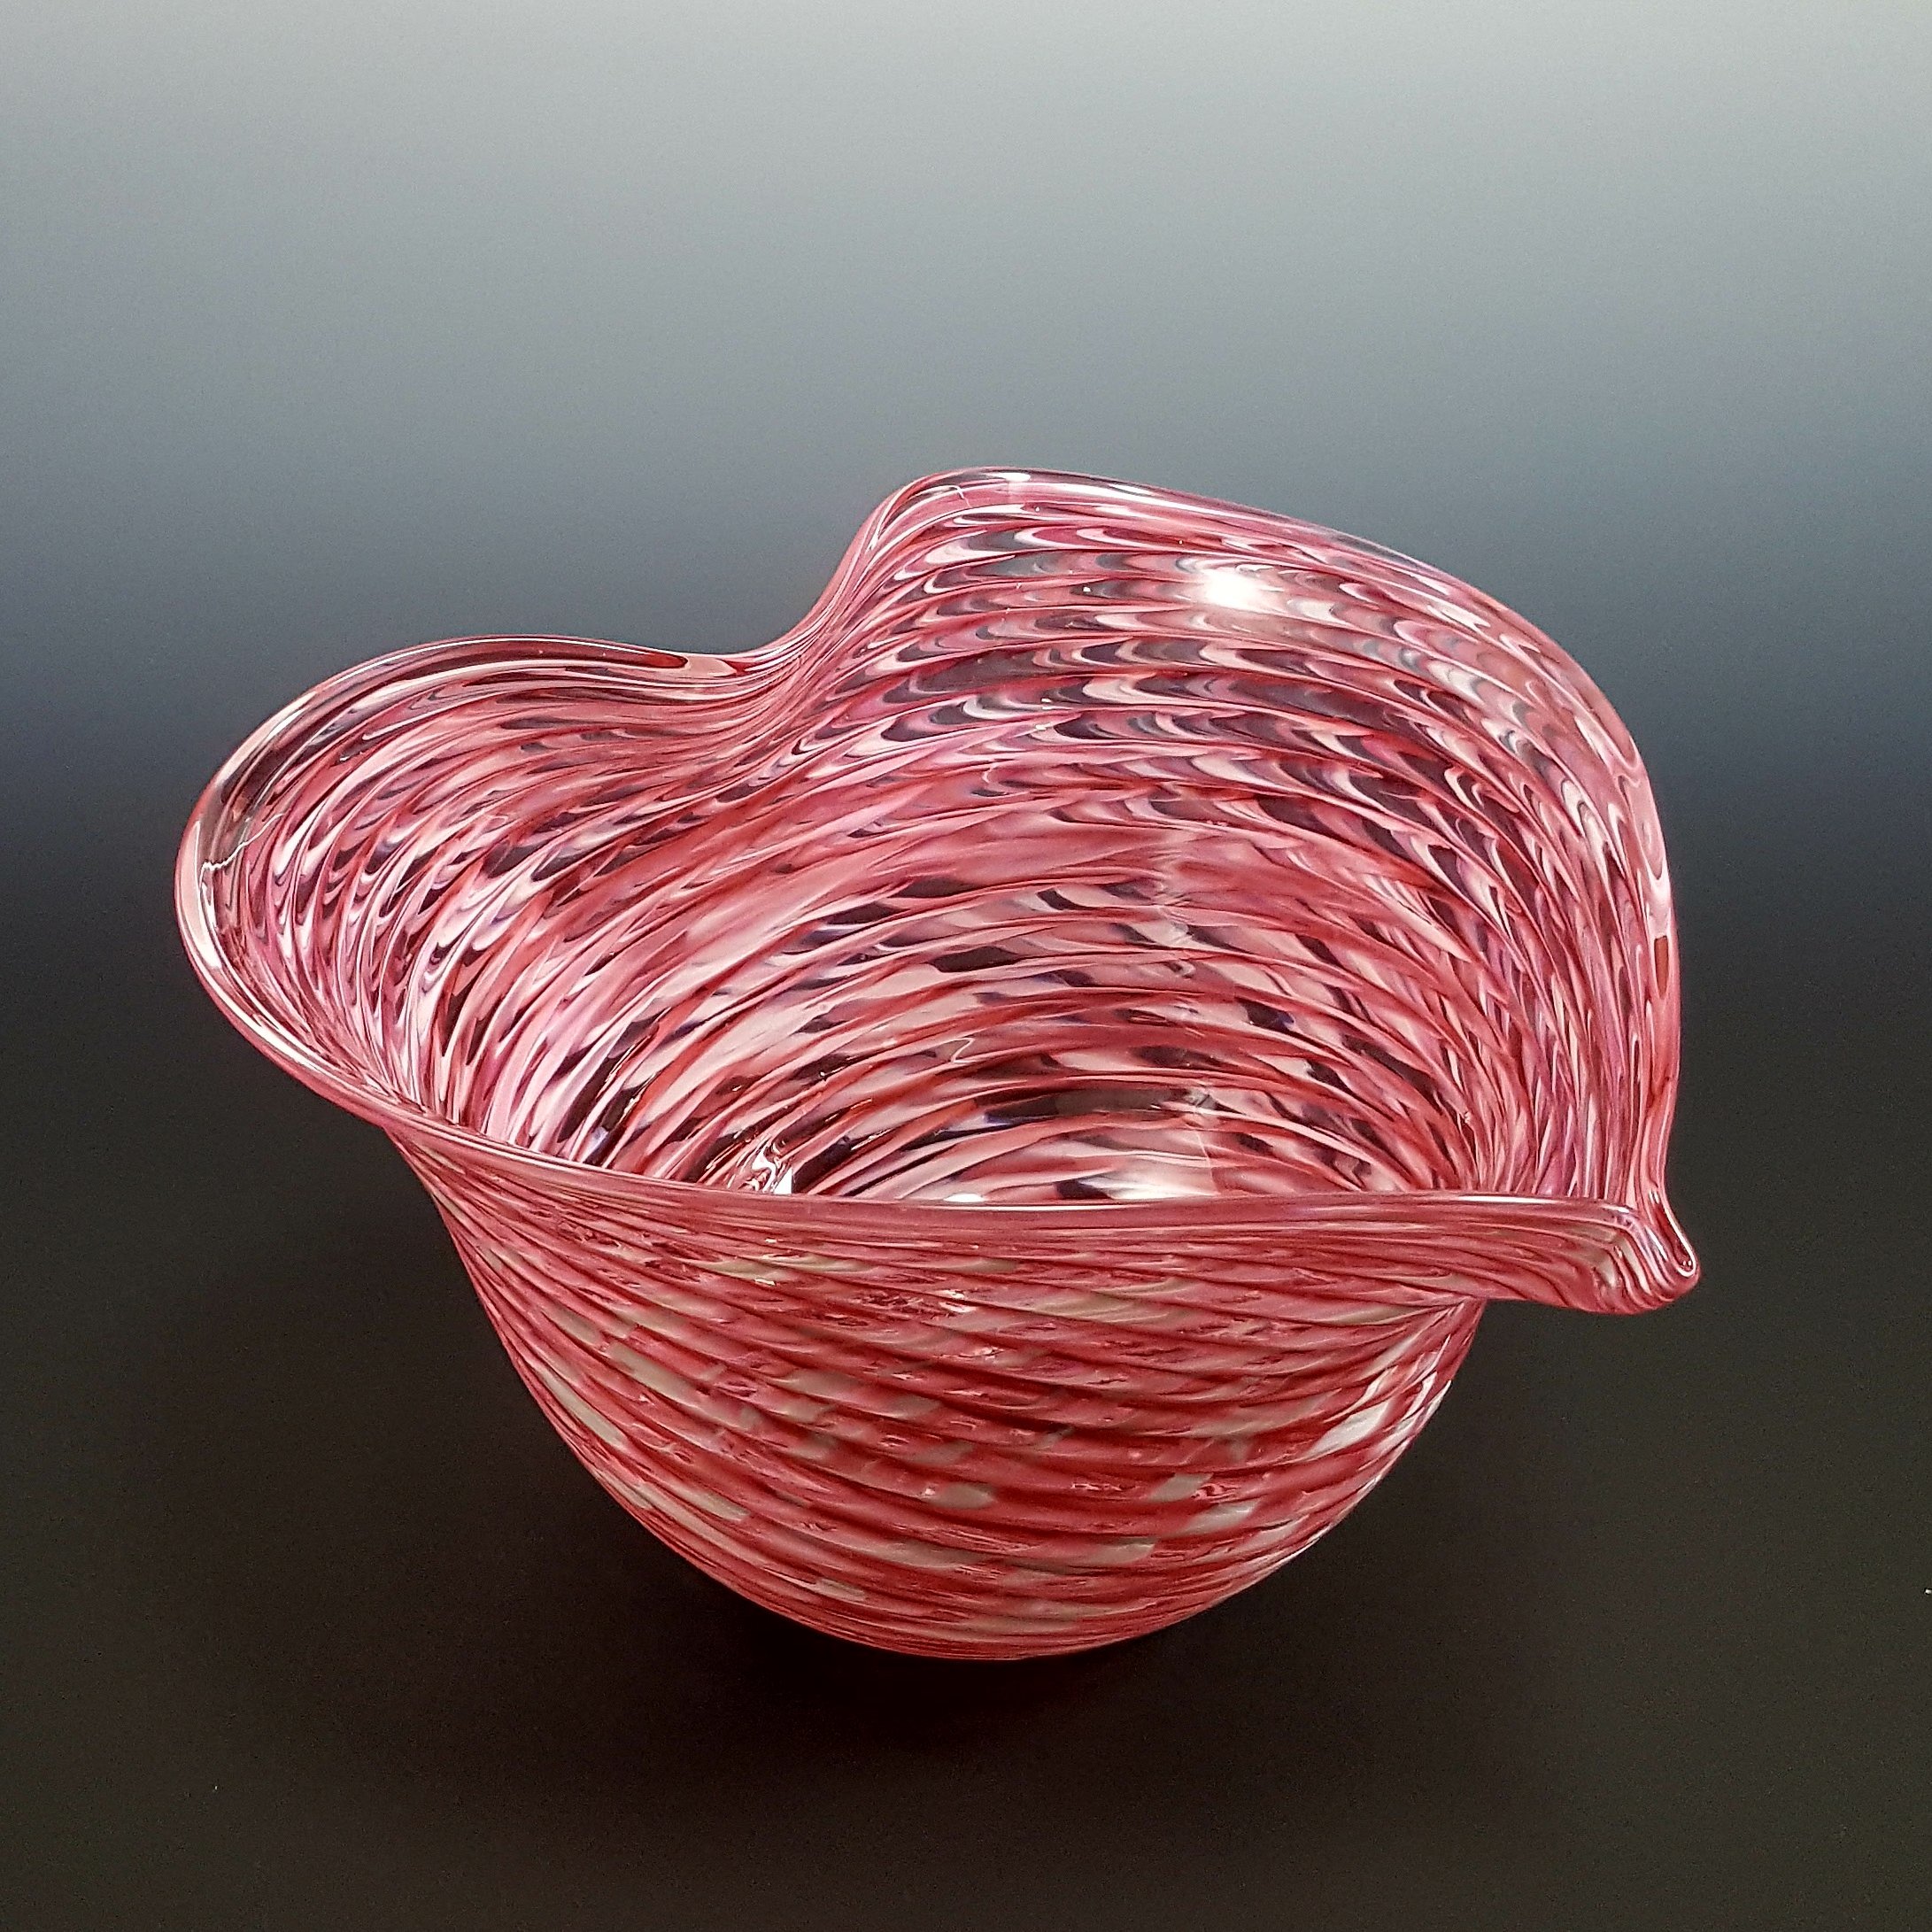 Optic Heart Bowl By Mark Rosenbaum Art Glass Bowl Artful Home